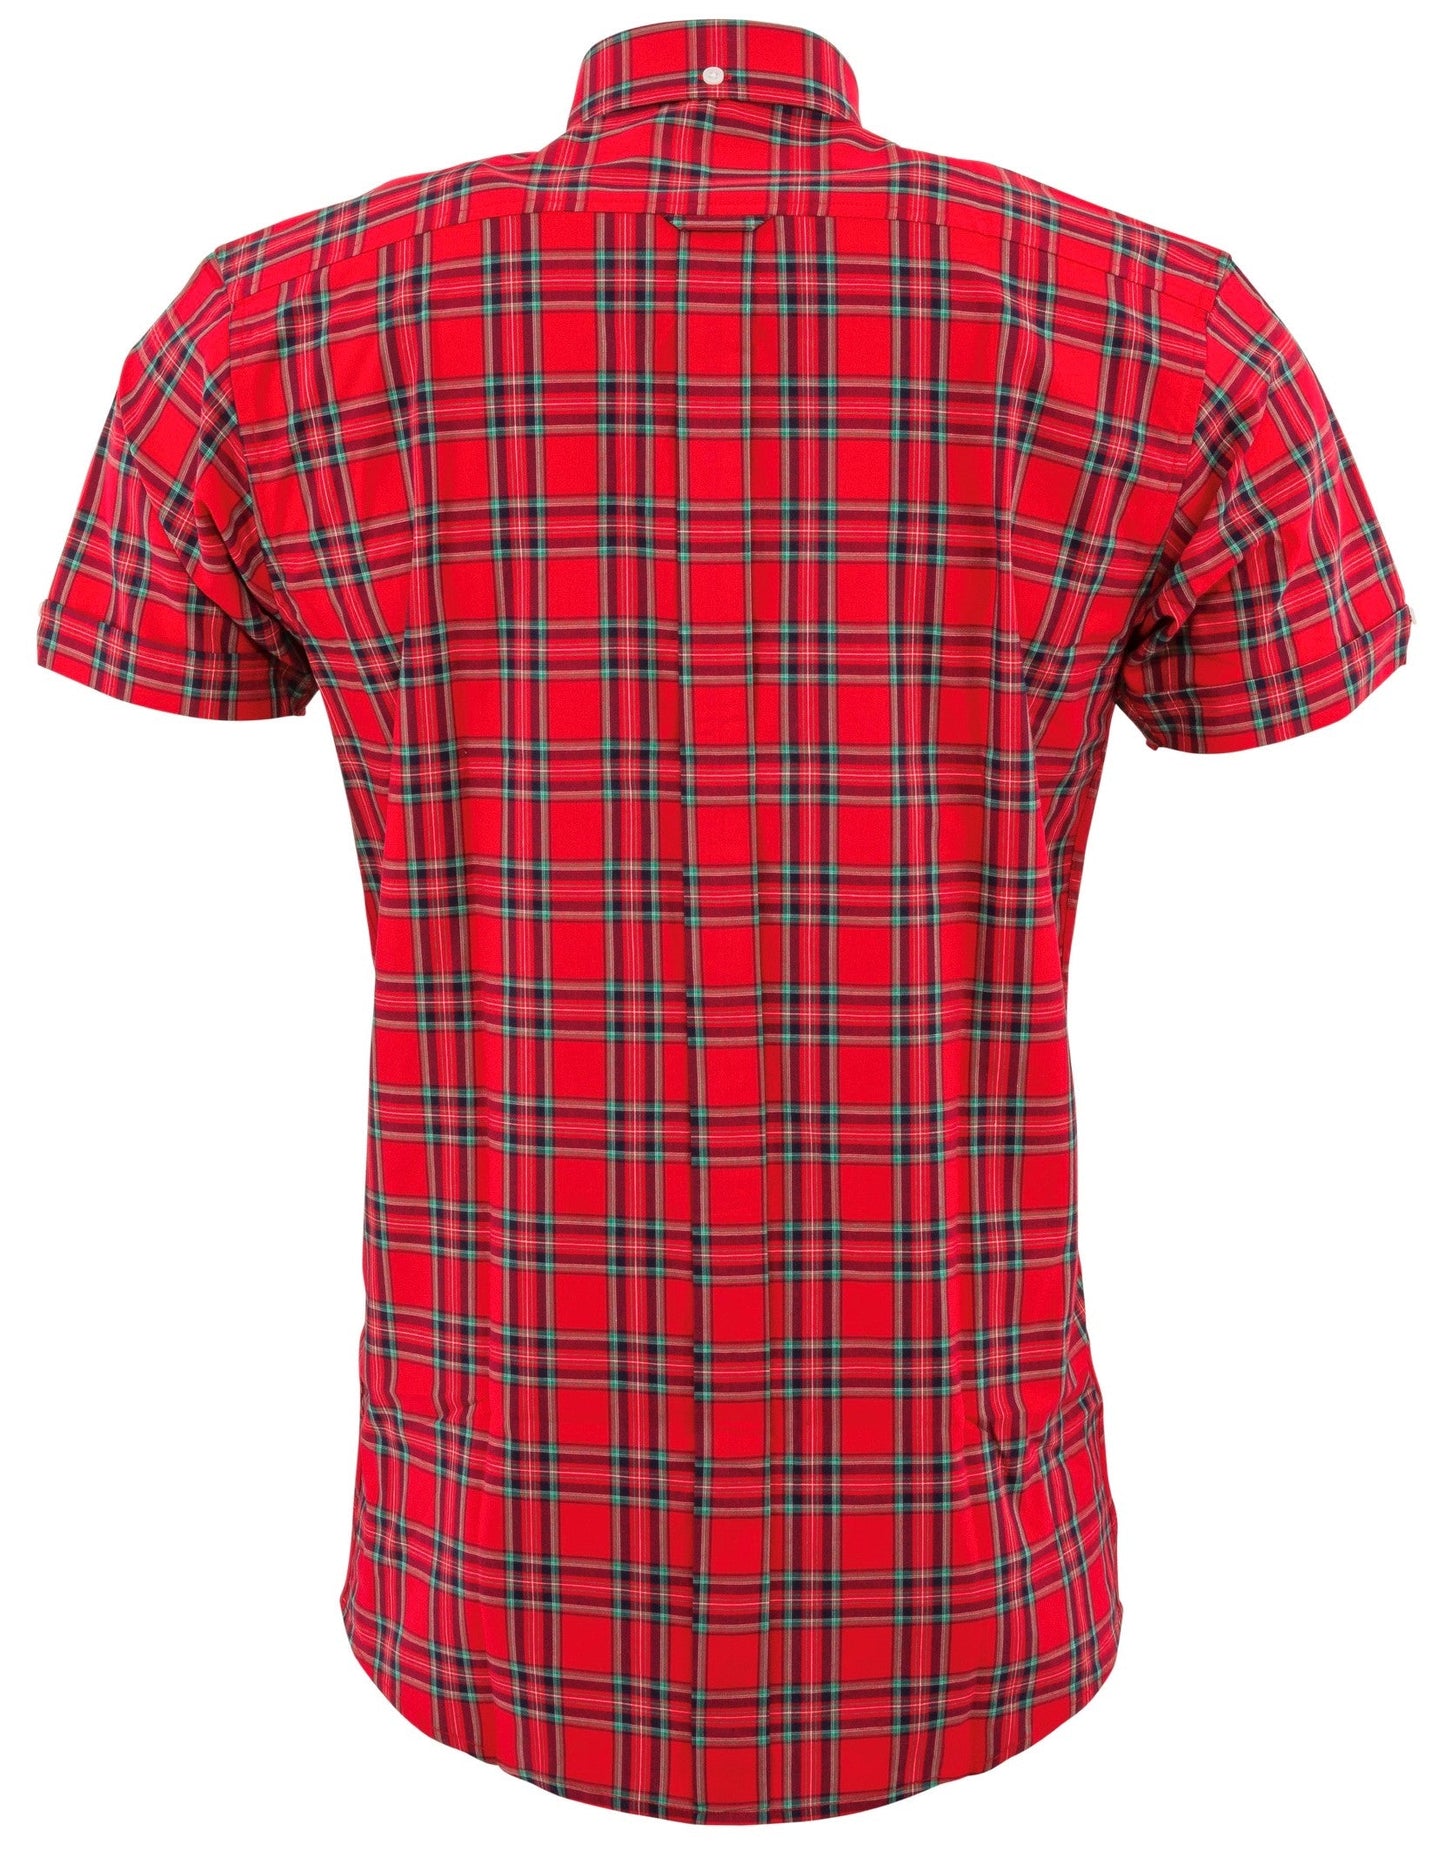 Relco chemises boutonnées à manches courtes à carreaux rouges pour hommes